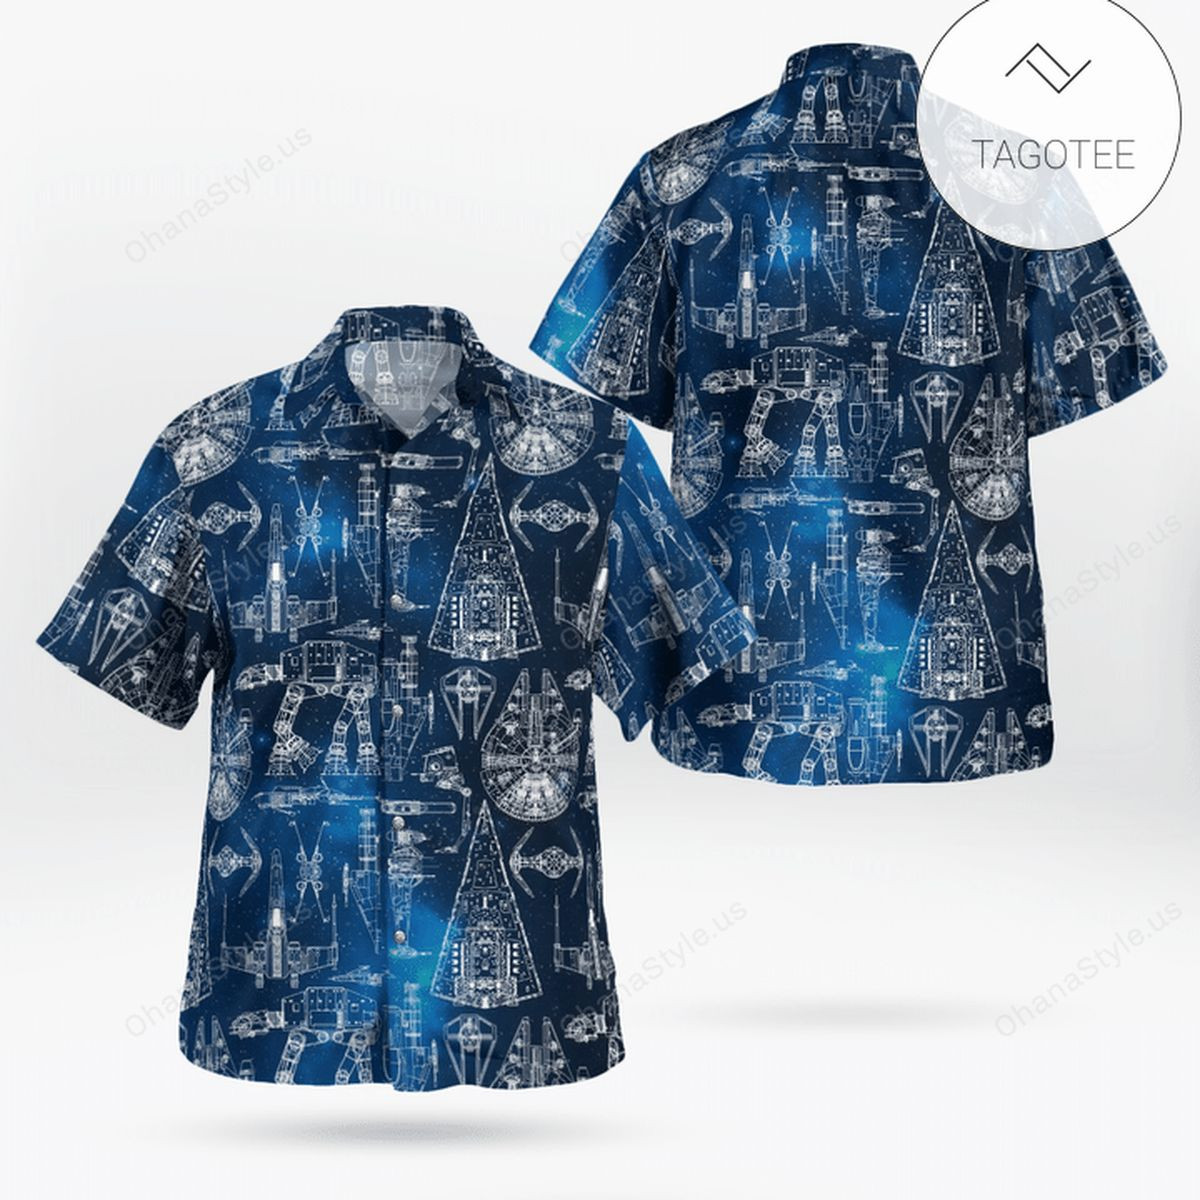 Galaxy Star Wars Hawaiian Shirt